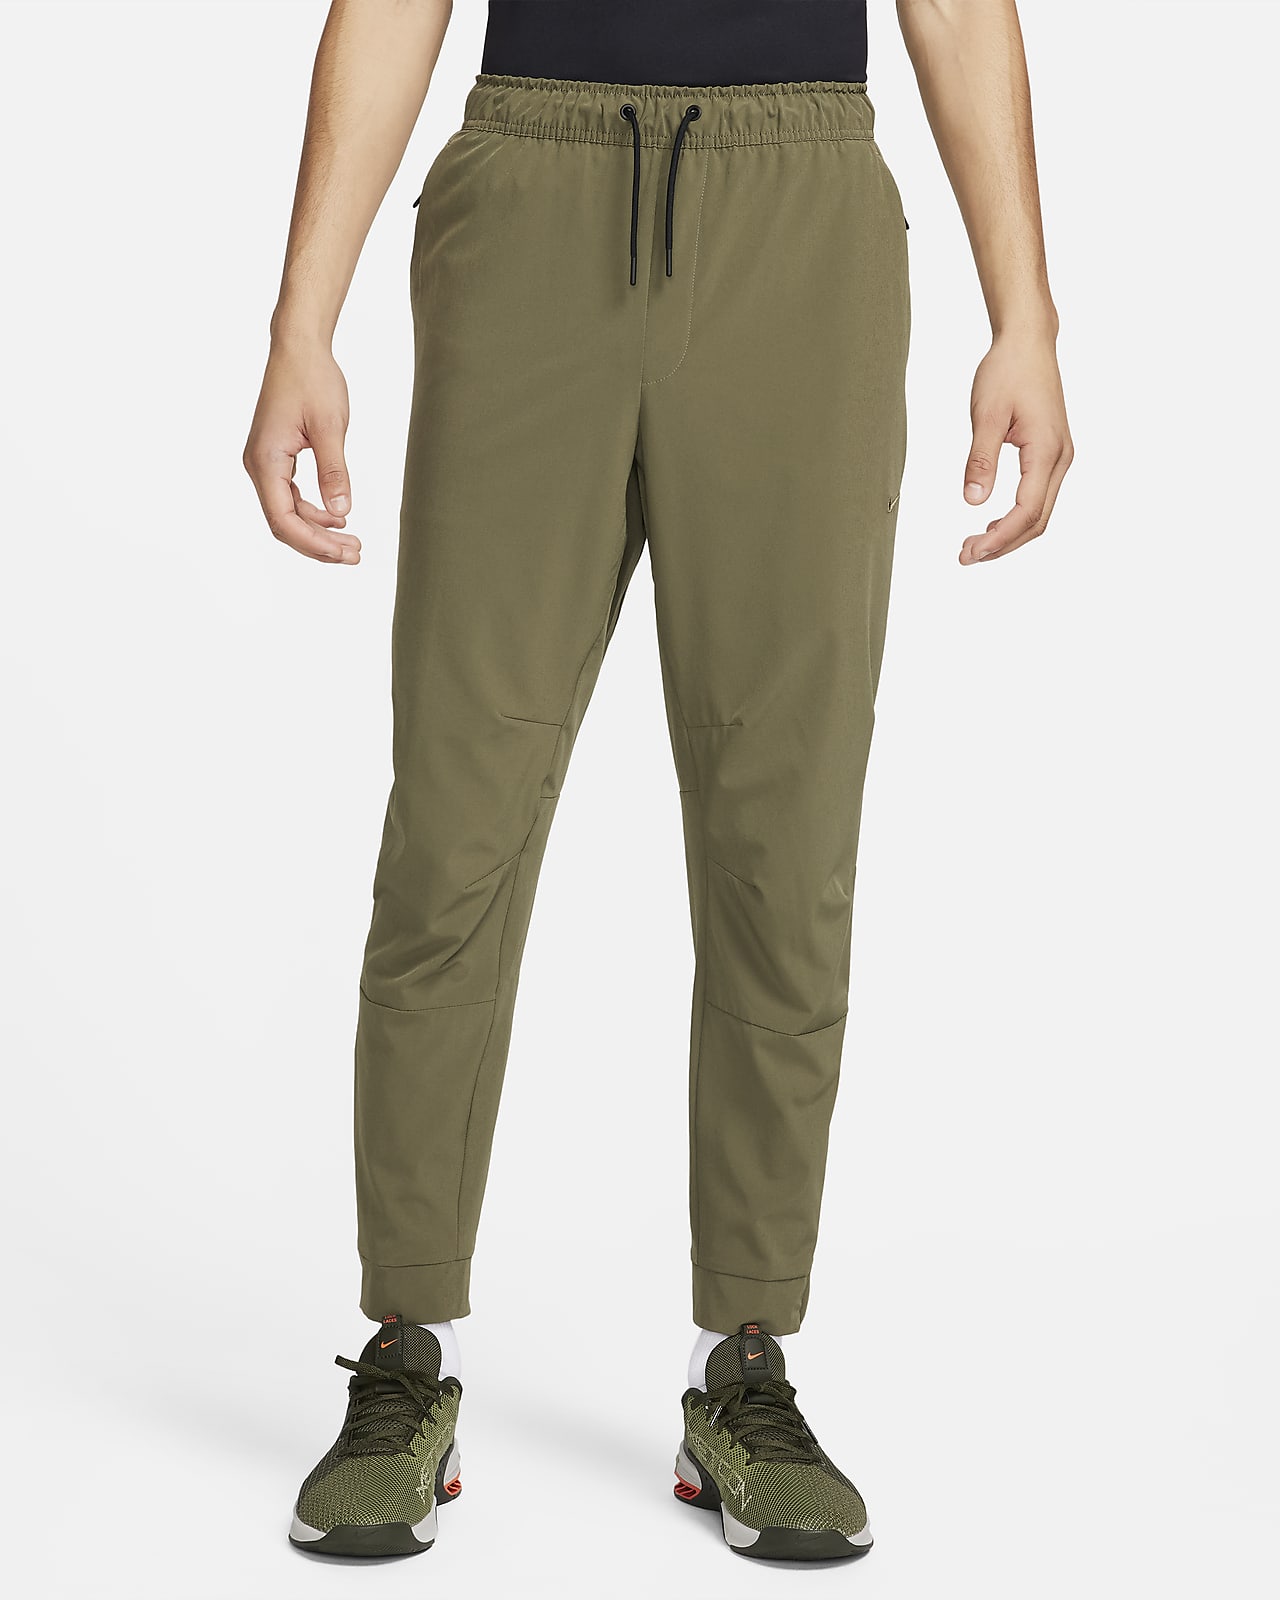 Pánské všestranné kalhoty Nike Dri-FIT Unlimited s manžetami na zip